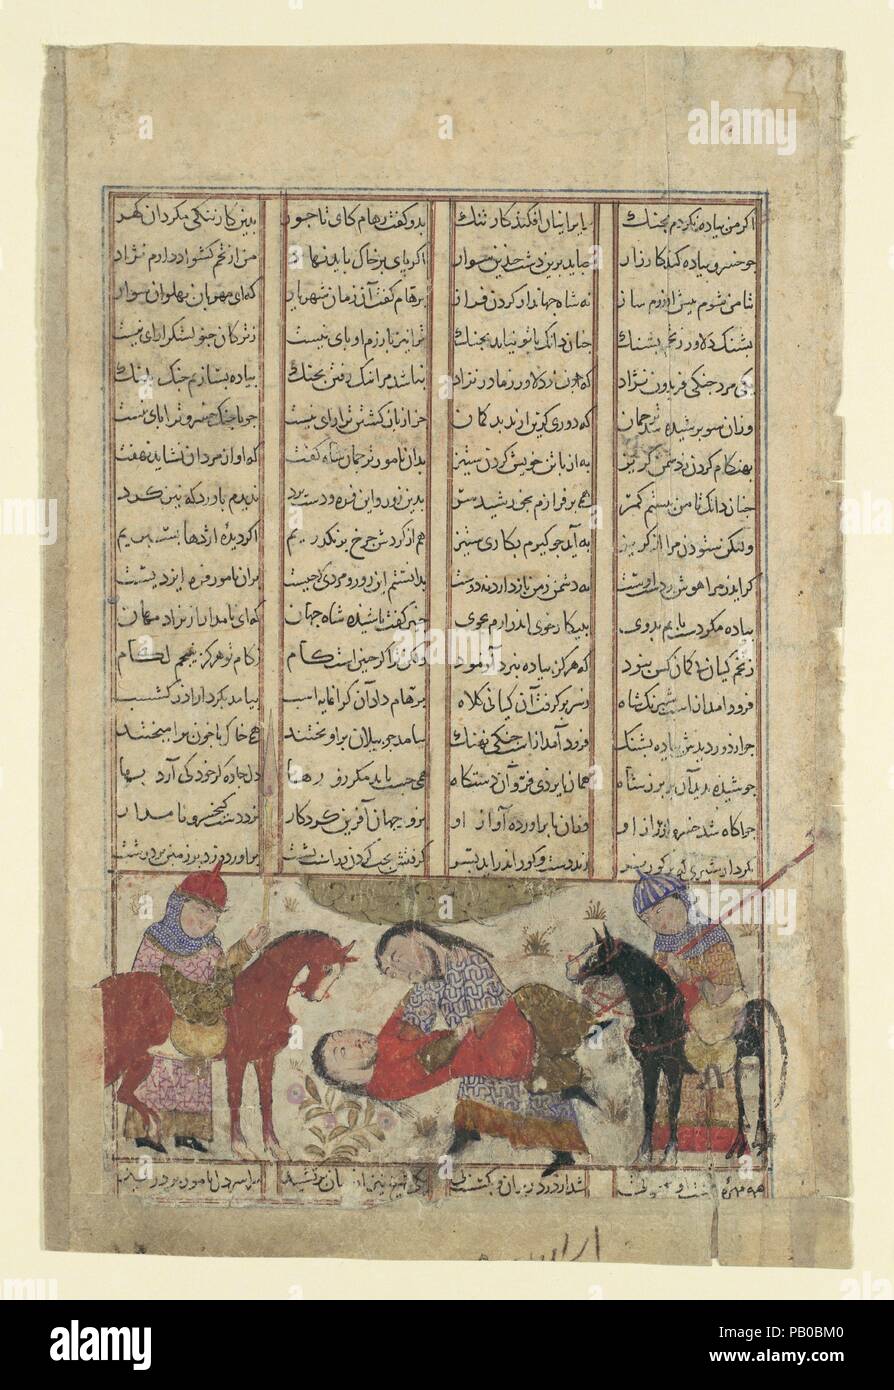 "Kai Khusrau ringt mit Shida", Folio aus einem shahnama (Buch der Könige). Thema: Abu'l Qasim Firdausi (935-1020). Abmessungen: Seite: 8 x 5 1/4 in. (20,3 x 13,3 cm) Malerei: 1 7/8 x 4 1/4 in. (4,8 x 10,8 cm). Datum: Ca. 1330-40. Ringen war oft die letzte Phase der Zweikampf Begegnungen. In diesem Fall, den Prinzen gespielt, dass die regierende Schah des Iran nicht riskieren würde die Beleidigung des Wrestling zu Fuß. Kai Khusrau, jedoch Denken der Verlust der iranischen Krieger an den Händen von Shida, gezwungen, ihn zu stürzen zu Boden, sein Leben zu beenden. Die beiden Hinterbeinen und Schwanz des Stockfoto